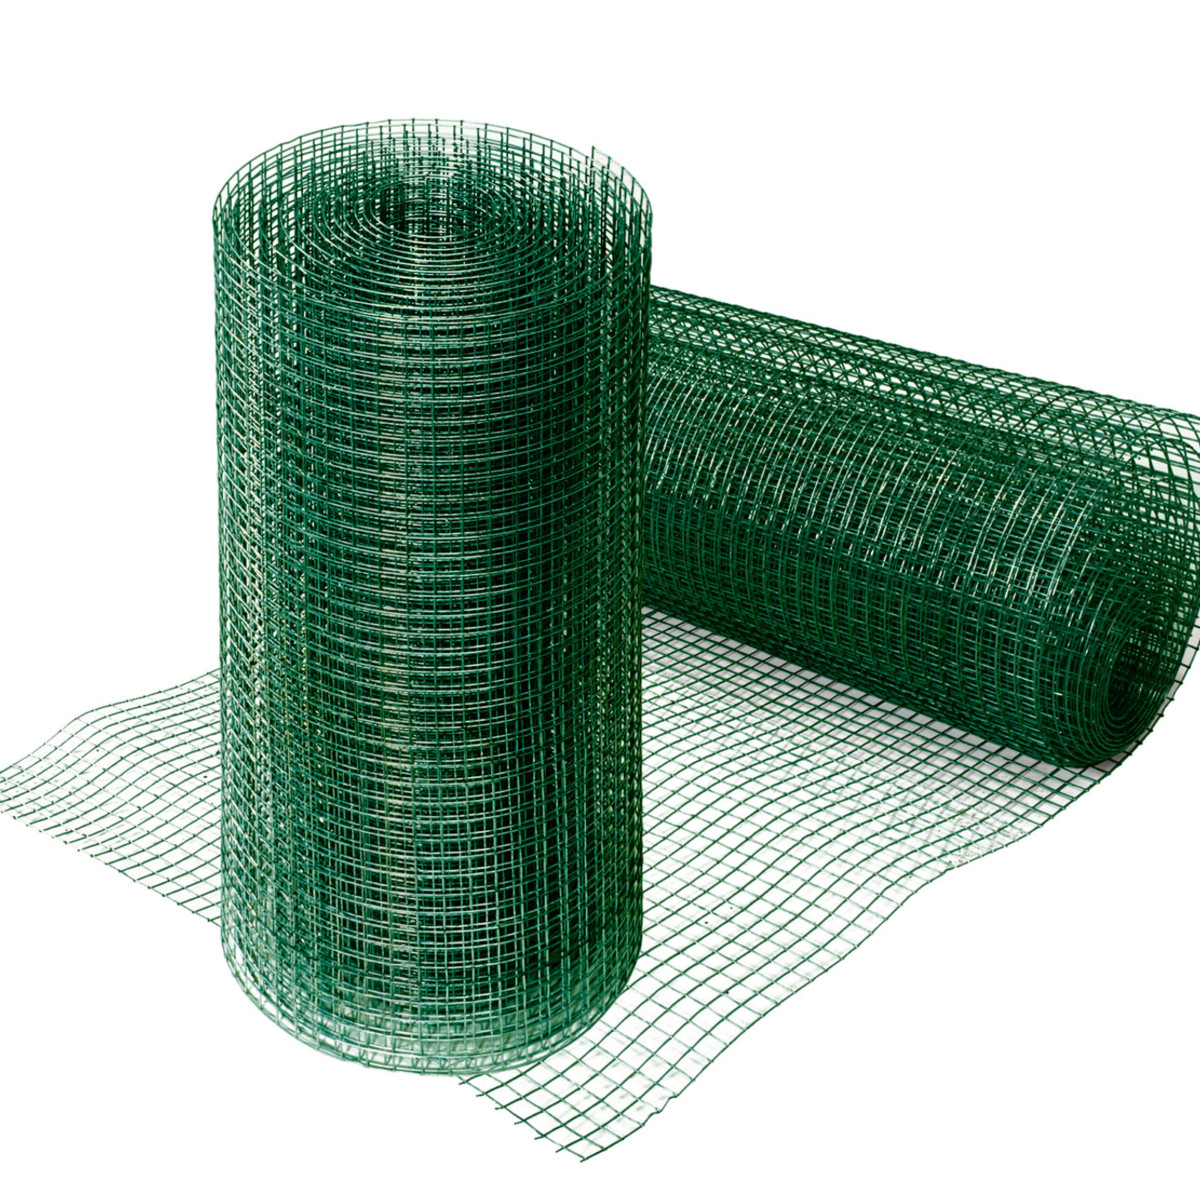 mailles 12,7mm, 4 tailles, clôture volière plastique rigide inox